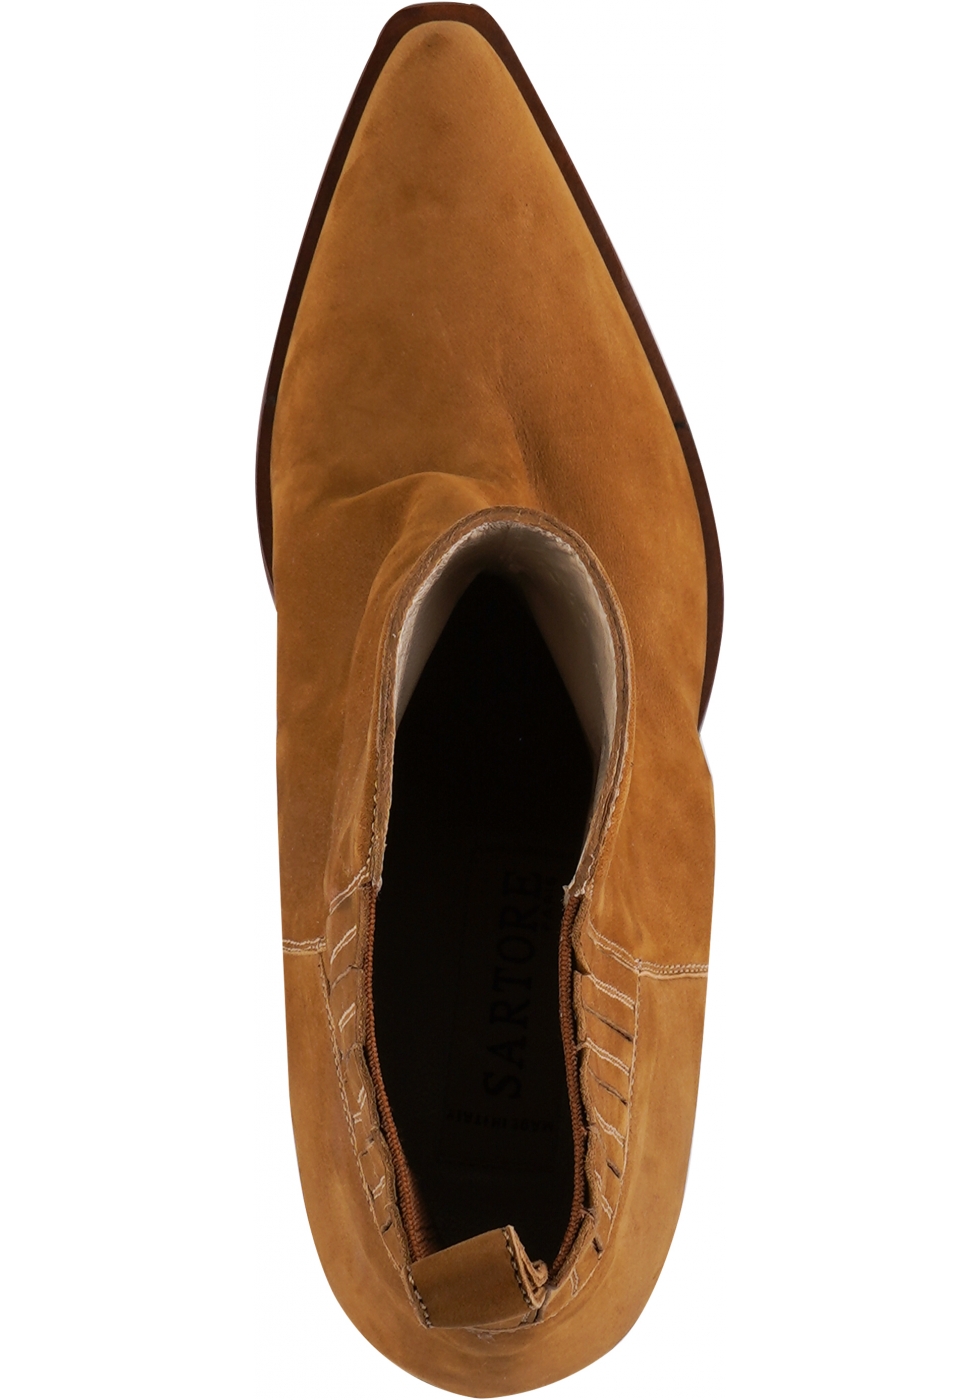 Saint Santina Cognac Leather Ankle Boots – SaintG USA